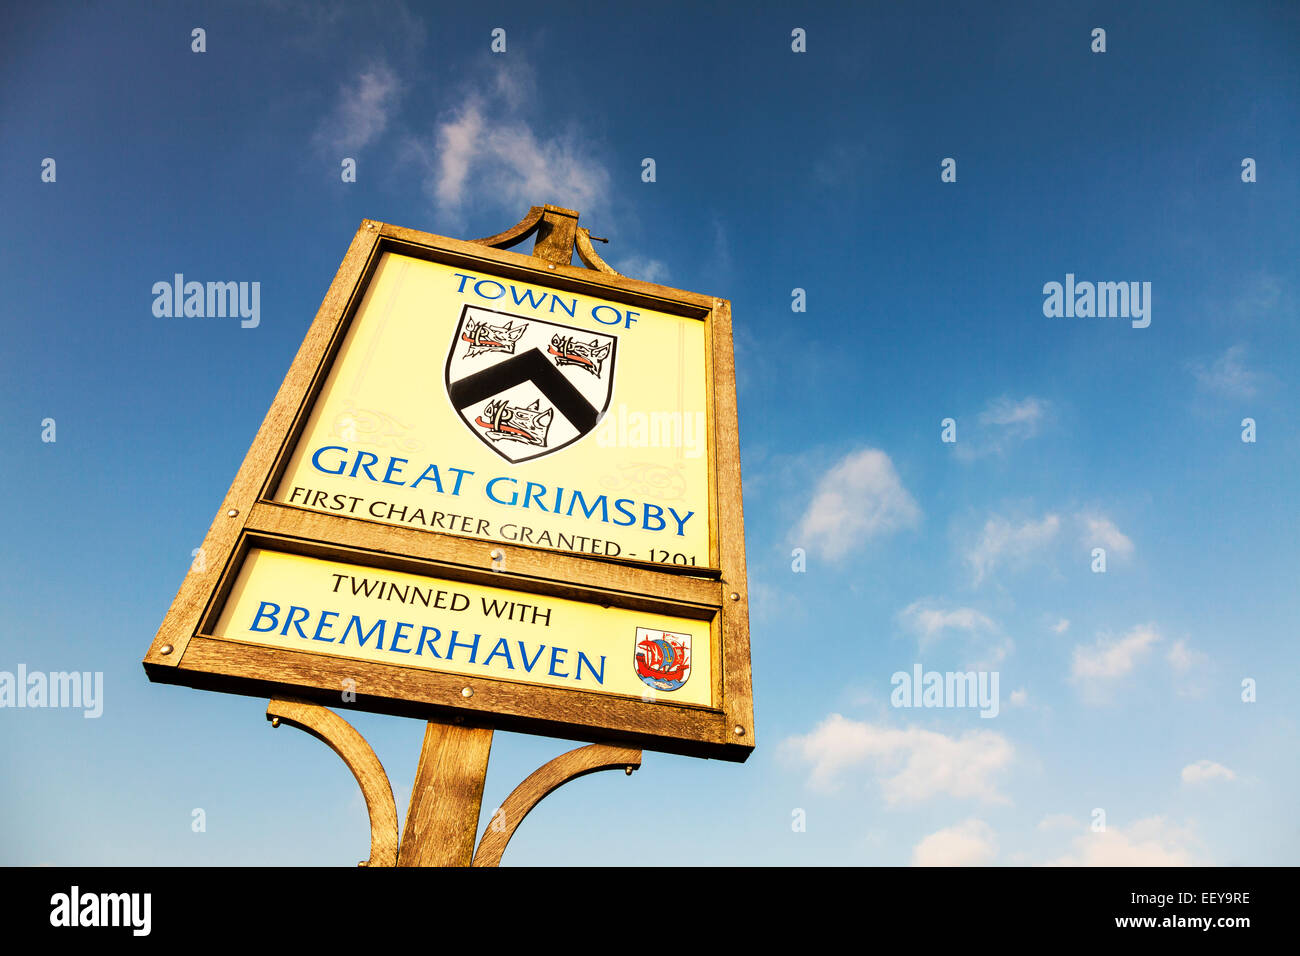 Grande Ville de Grimsby Bienvenue Inscription entrée en bordure de route jumelée avec Bremerhaven Lincolnshire Humberside Royaume-uni Angleterre Banque D'Images